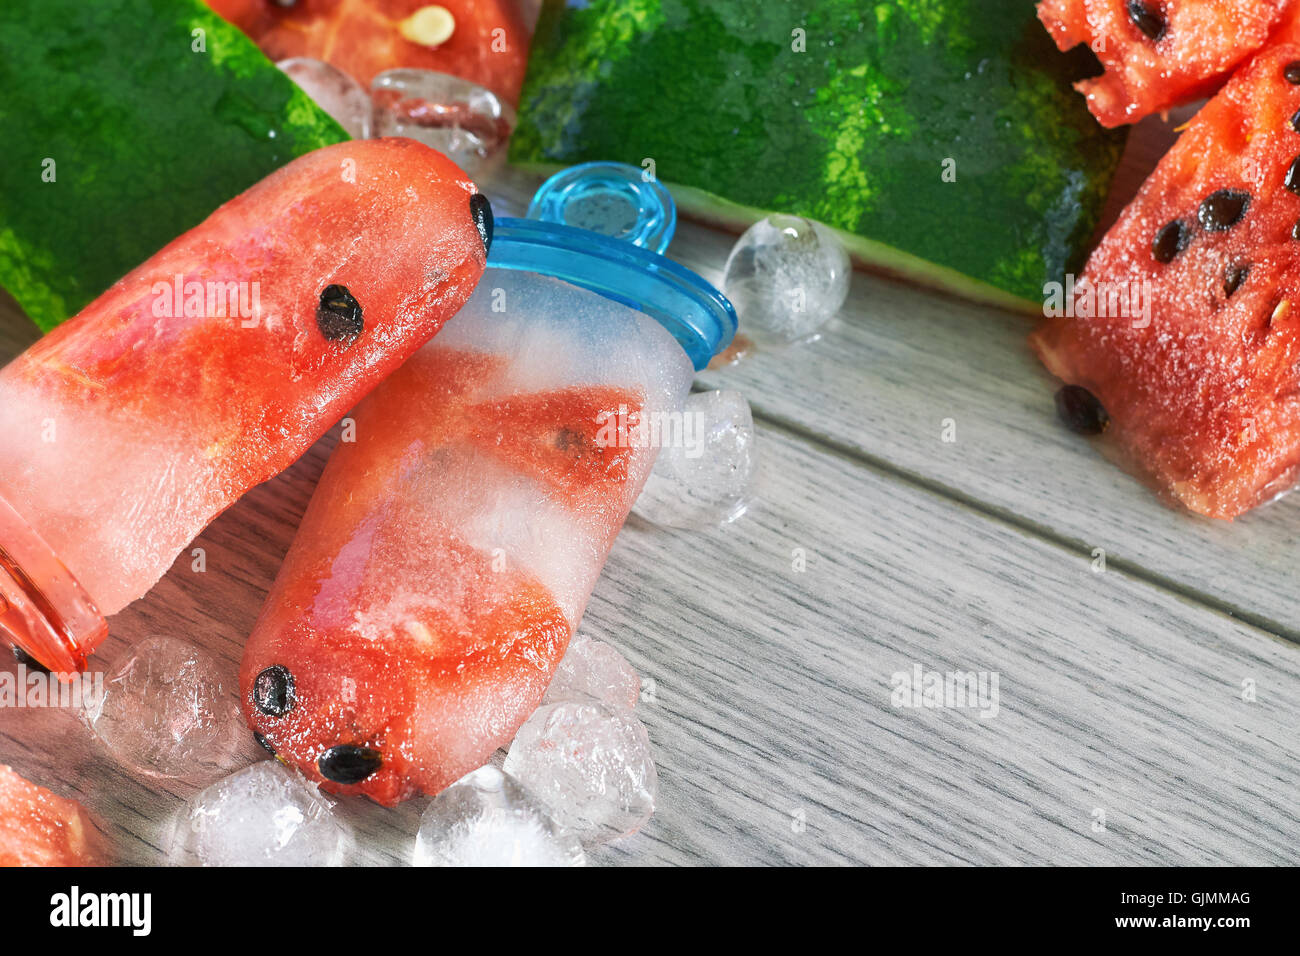 Gefrorene Wassermelone Eis am Stiel mit Eiswürfeln und Wassermelone Scheiben auf grauem Hintergrund aus Holz. Konzept-Bild für Sommer-Erfrischung Stockfoto